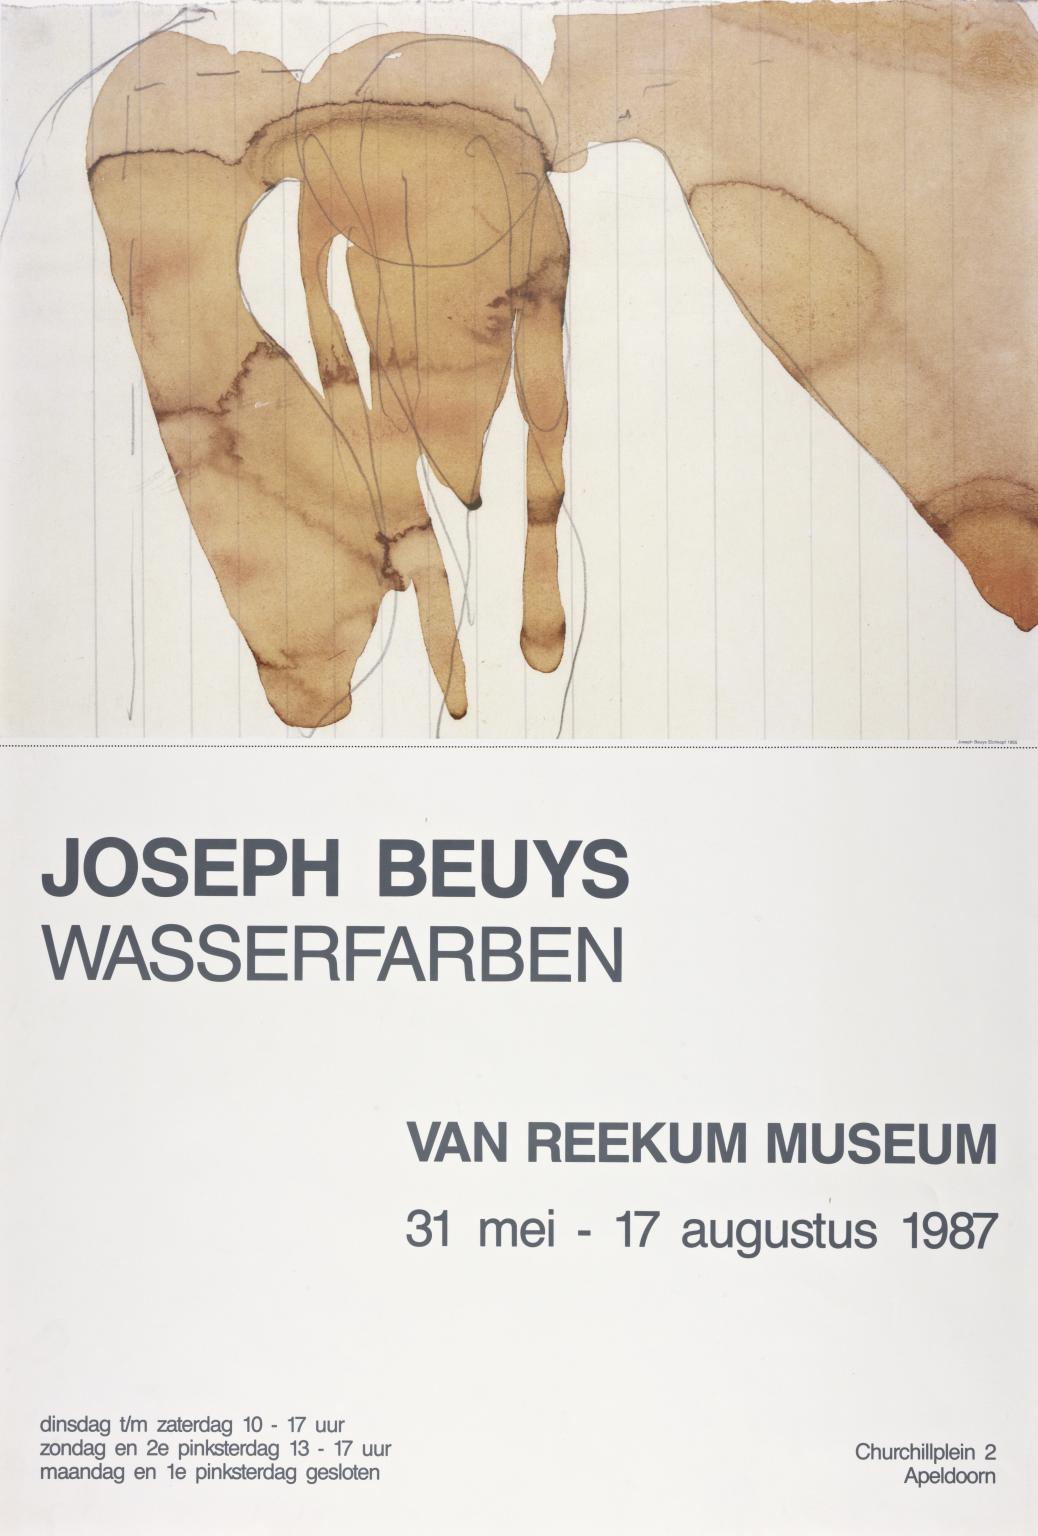 Joseph Beuys: Wasserfarben. Van Reekum Museum, Apeldoorn. 1987